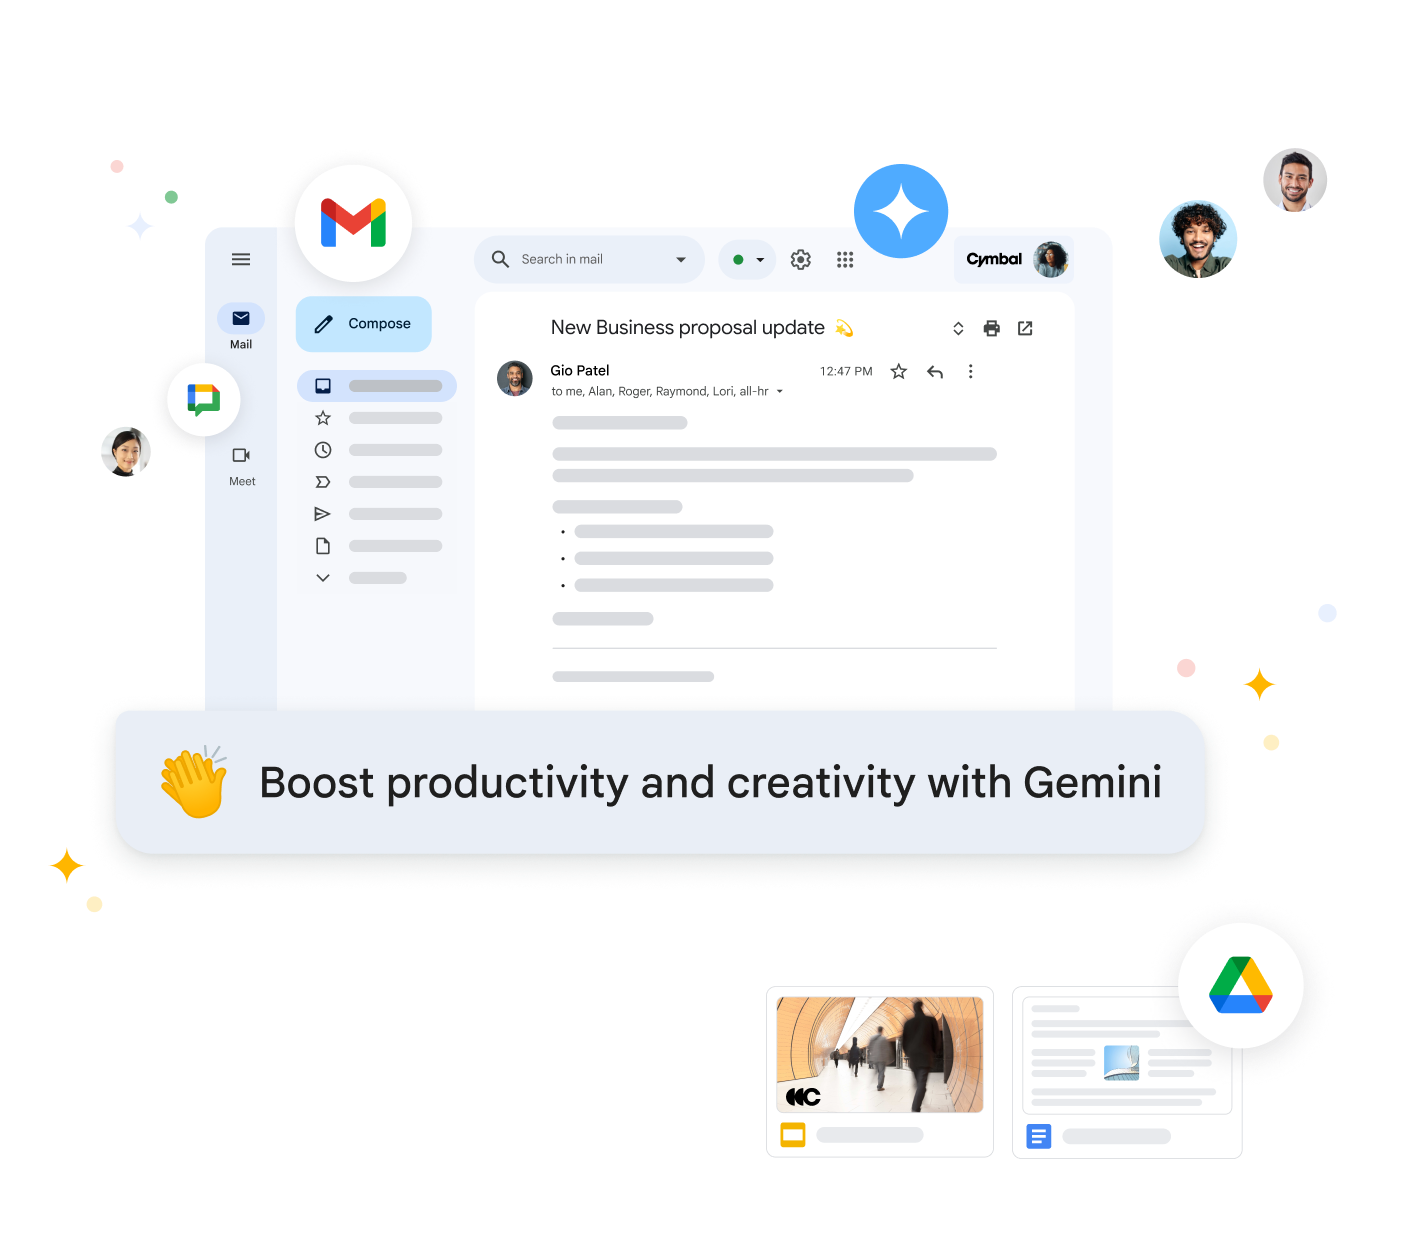 Gemini w Workspace streszcza e-maile i sugeruje odpowiedzi w Gmailu, żeby zwiększyć produktywność.